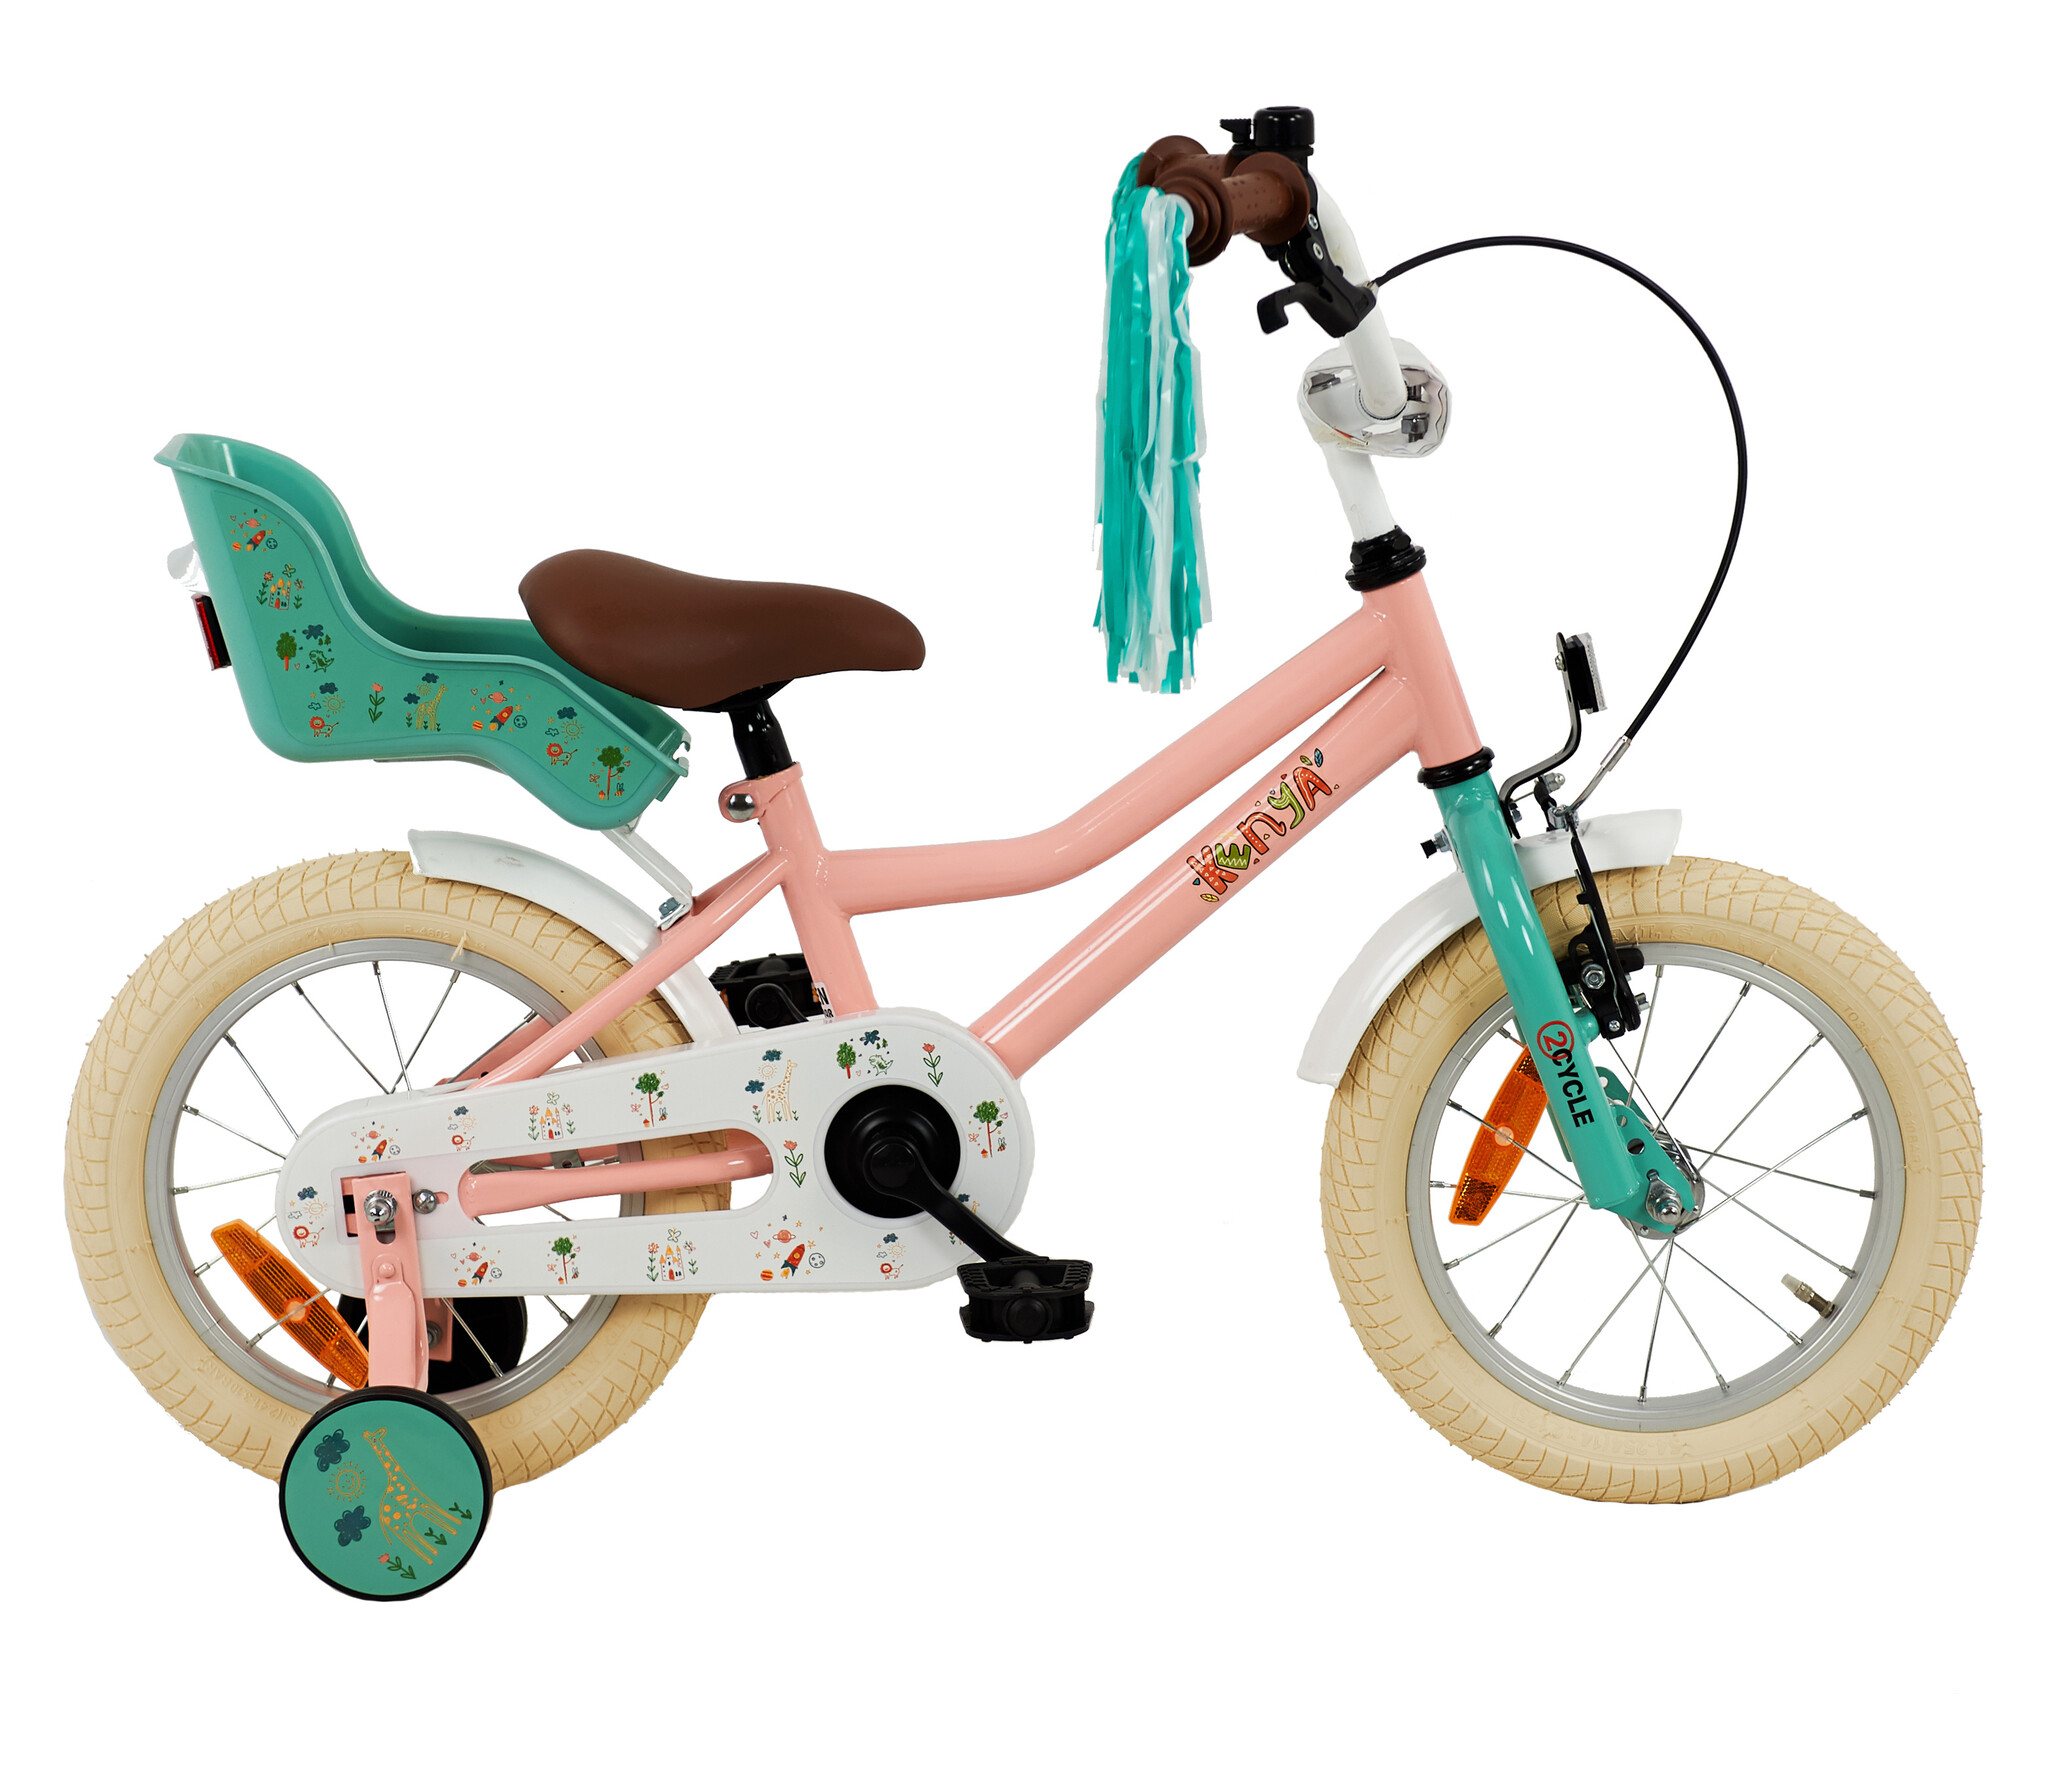 Voorspellen stout Integreren Goedkope roze 2Cycle Kenya kinderfiets online kopen | Prijskiller.nl